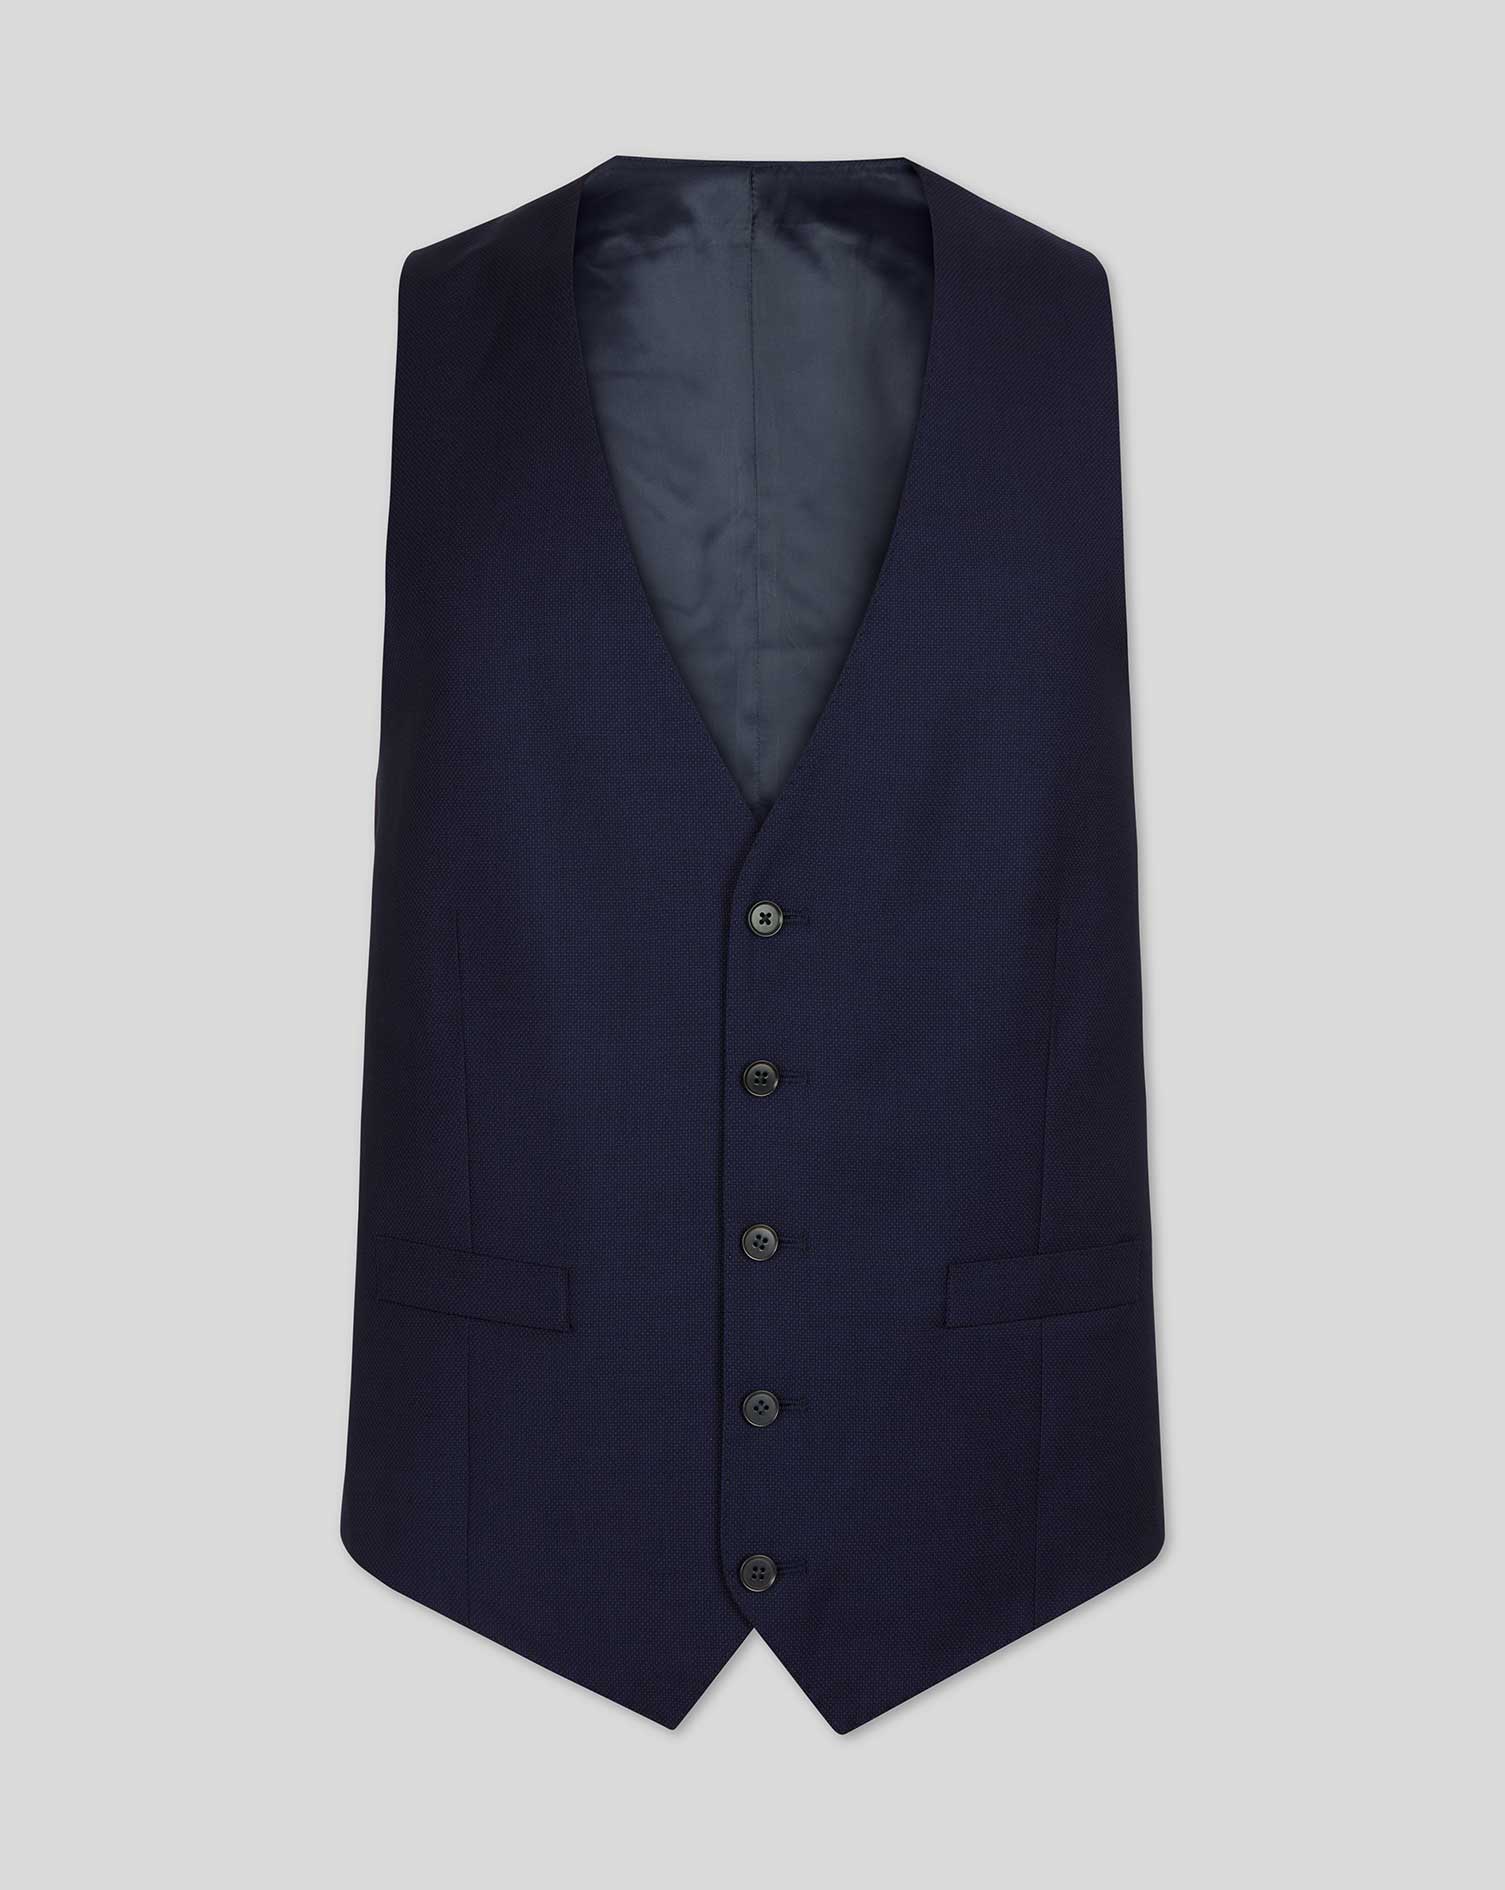 Men's Charles Tyrwhitt Birdseye Travel Suit Waistcoat - Ink Blue Size w38 Wool
